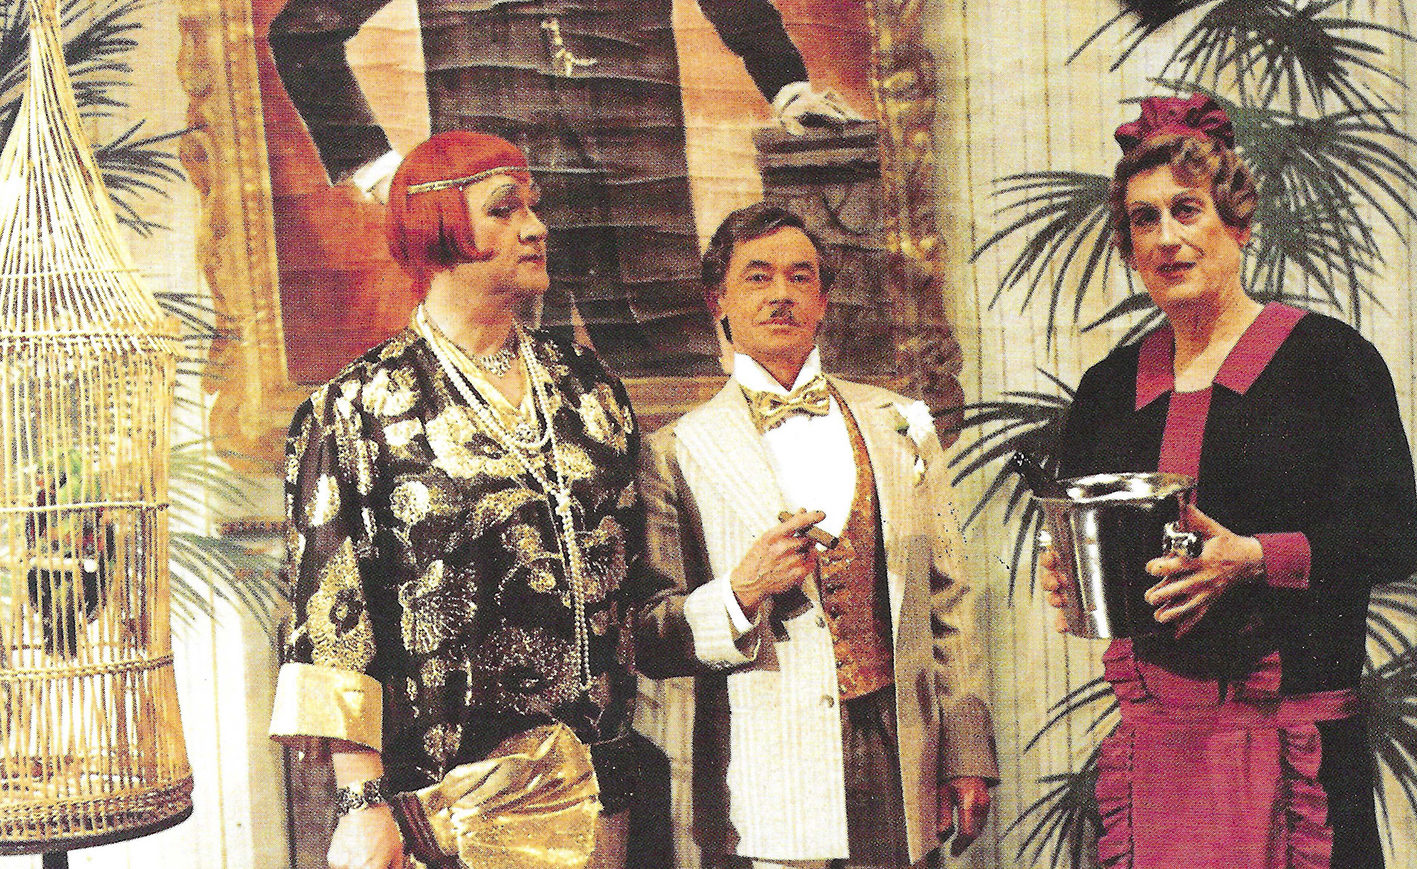 De Ostermann Story - Divertissementchen 1987 - Ensemble im Palmencafé mit Champagner